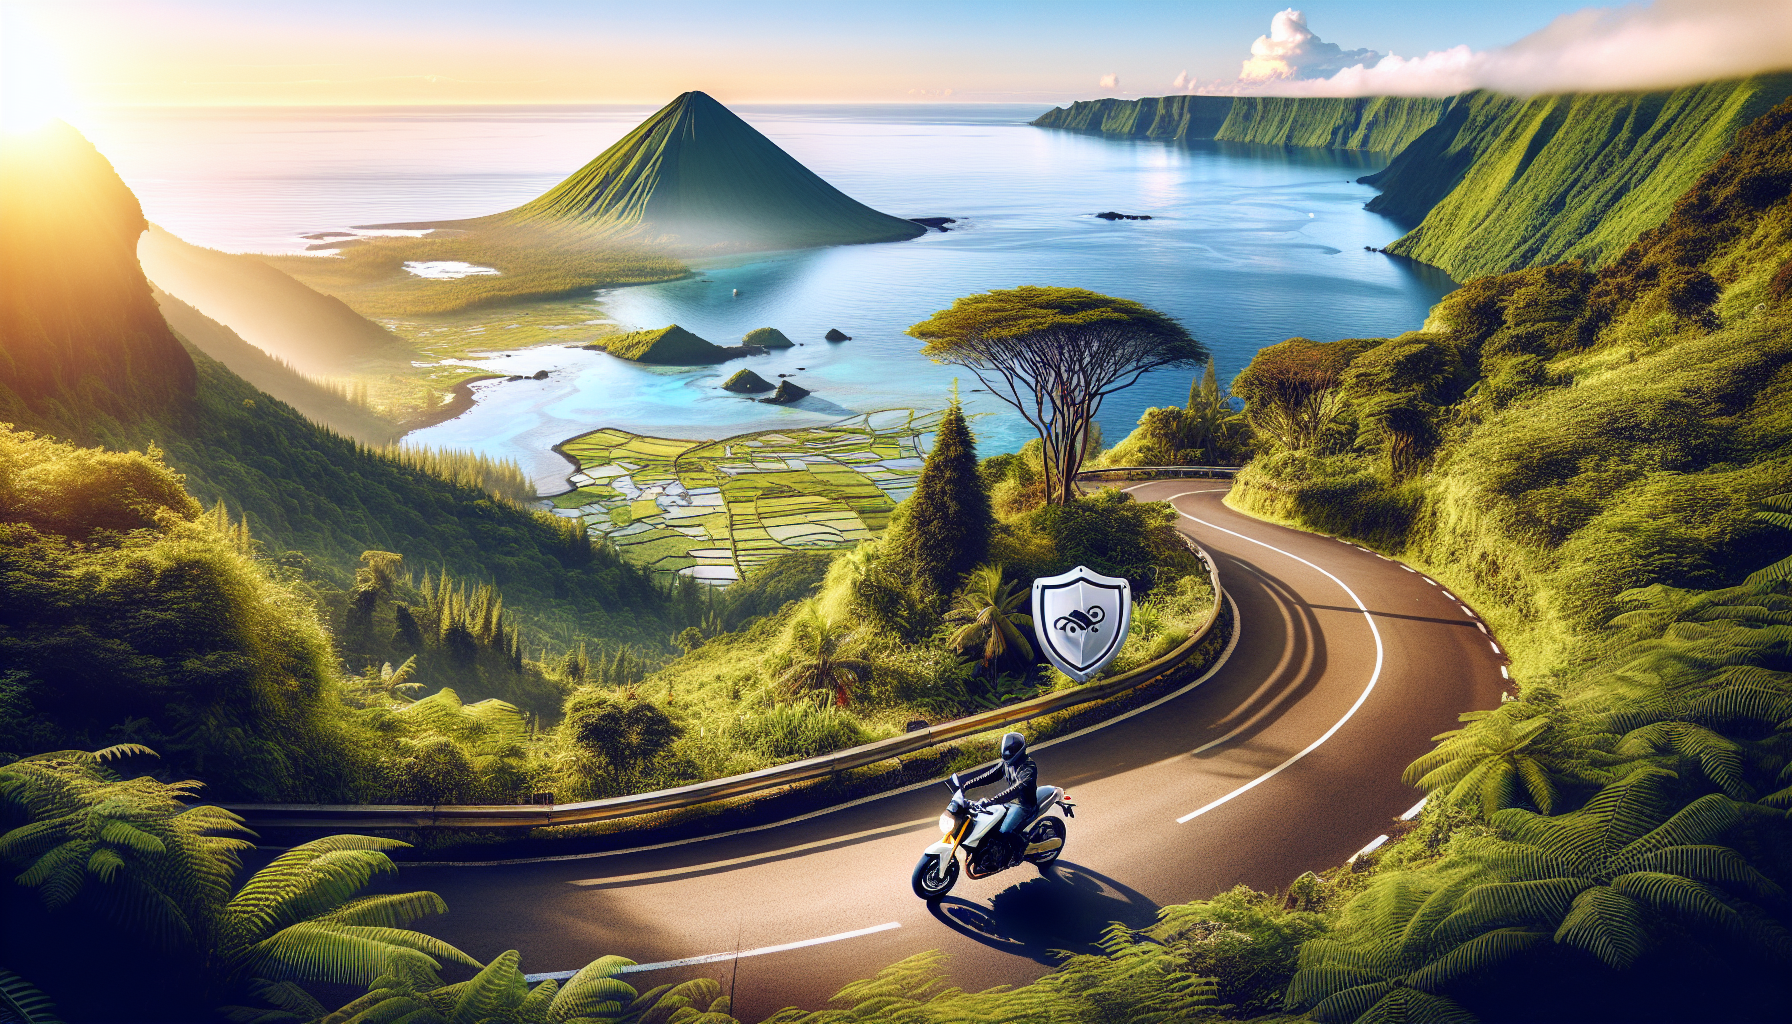 découvrez les avantages d'une assurance moto à la réunion avec notre expertise. protégez-vous sur les routes de l'île grâce à notre assurance moto sur-mesure.